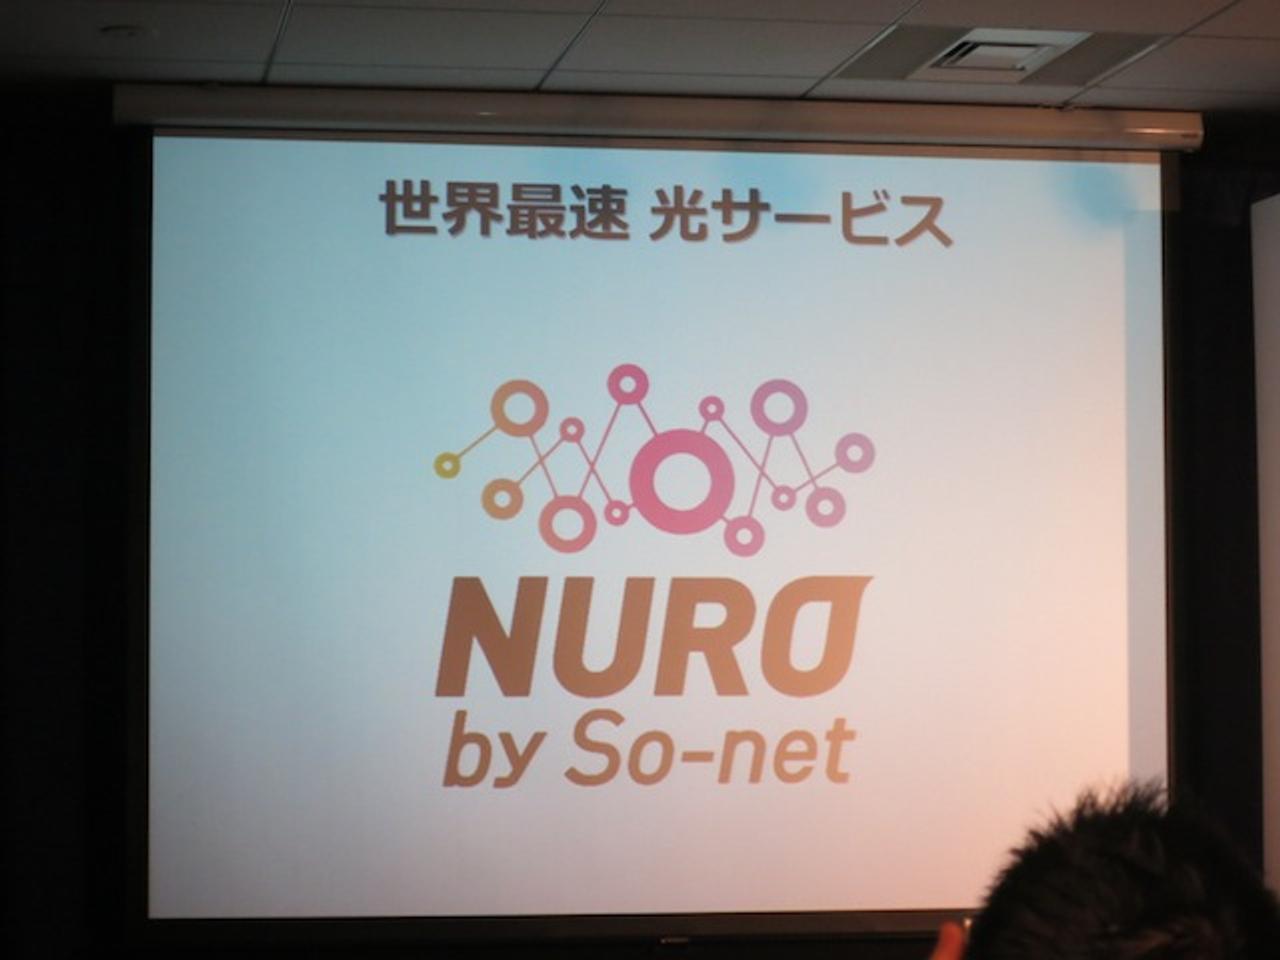 圧倒的な2Gbps！ ソネットの世界最速光ファイバーサービス｢NURO｣がスタート（追記あり）